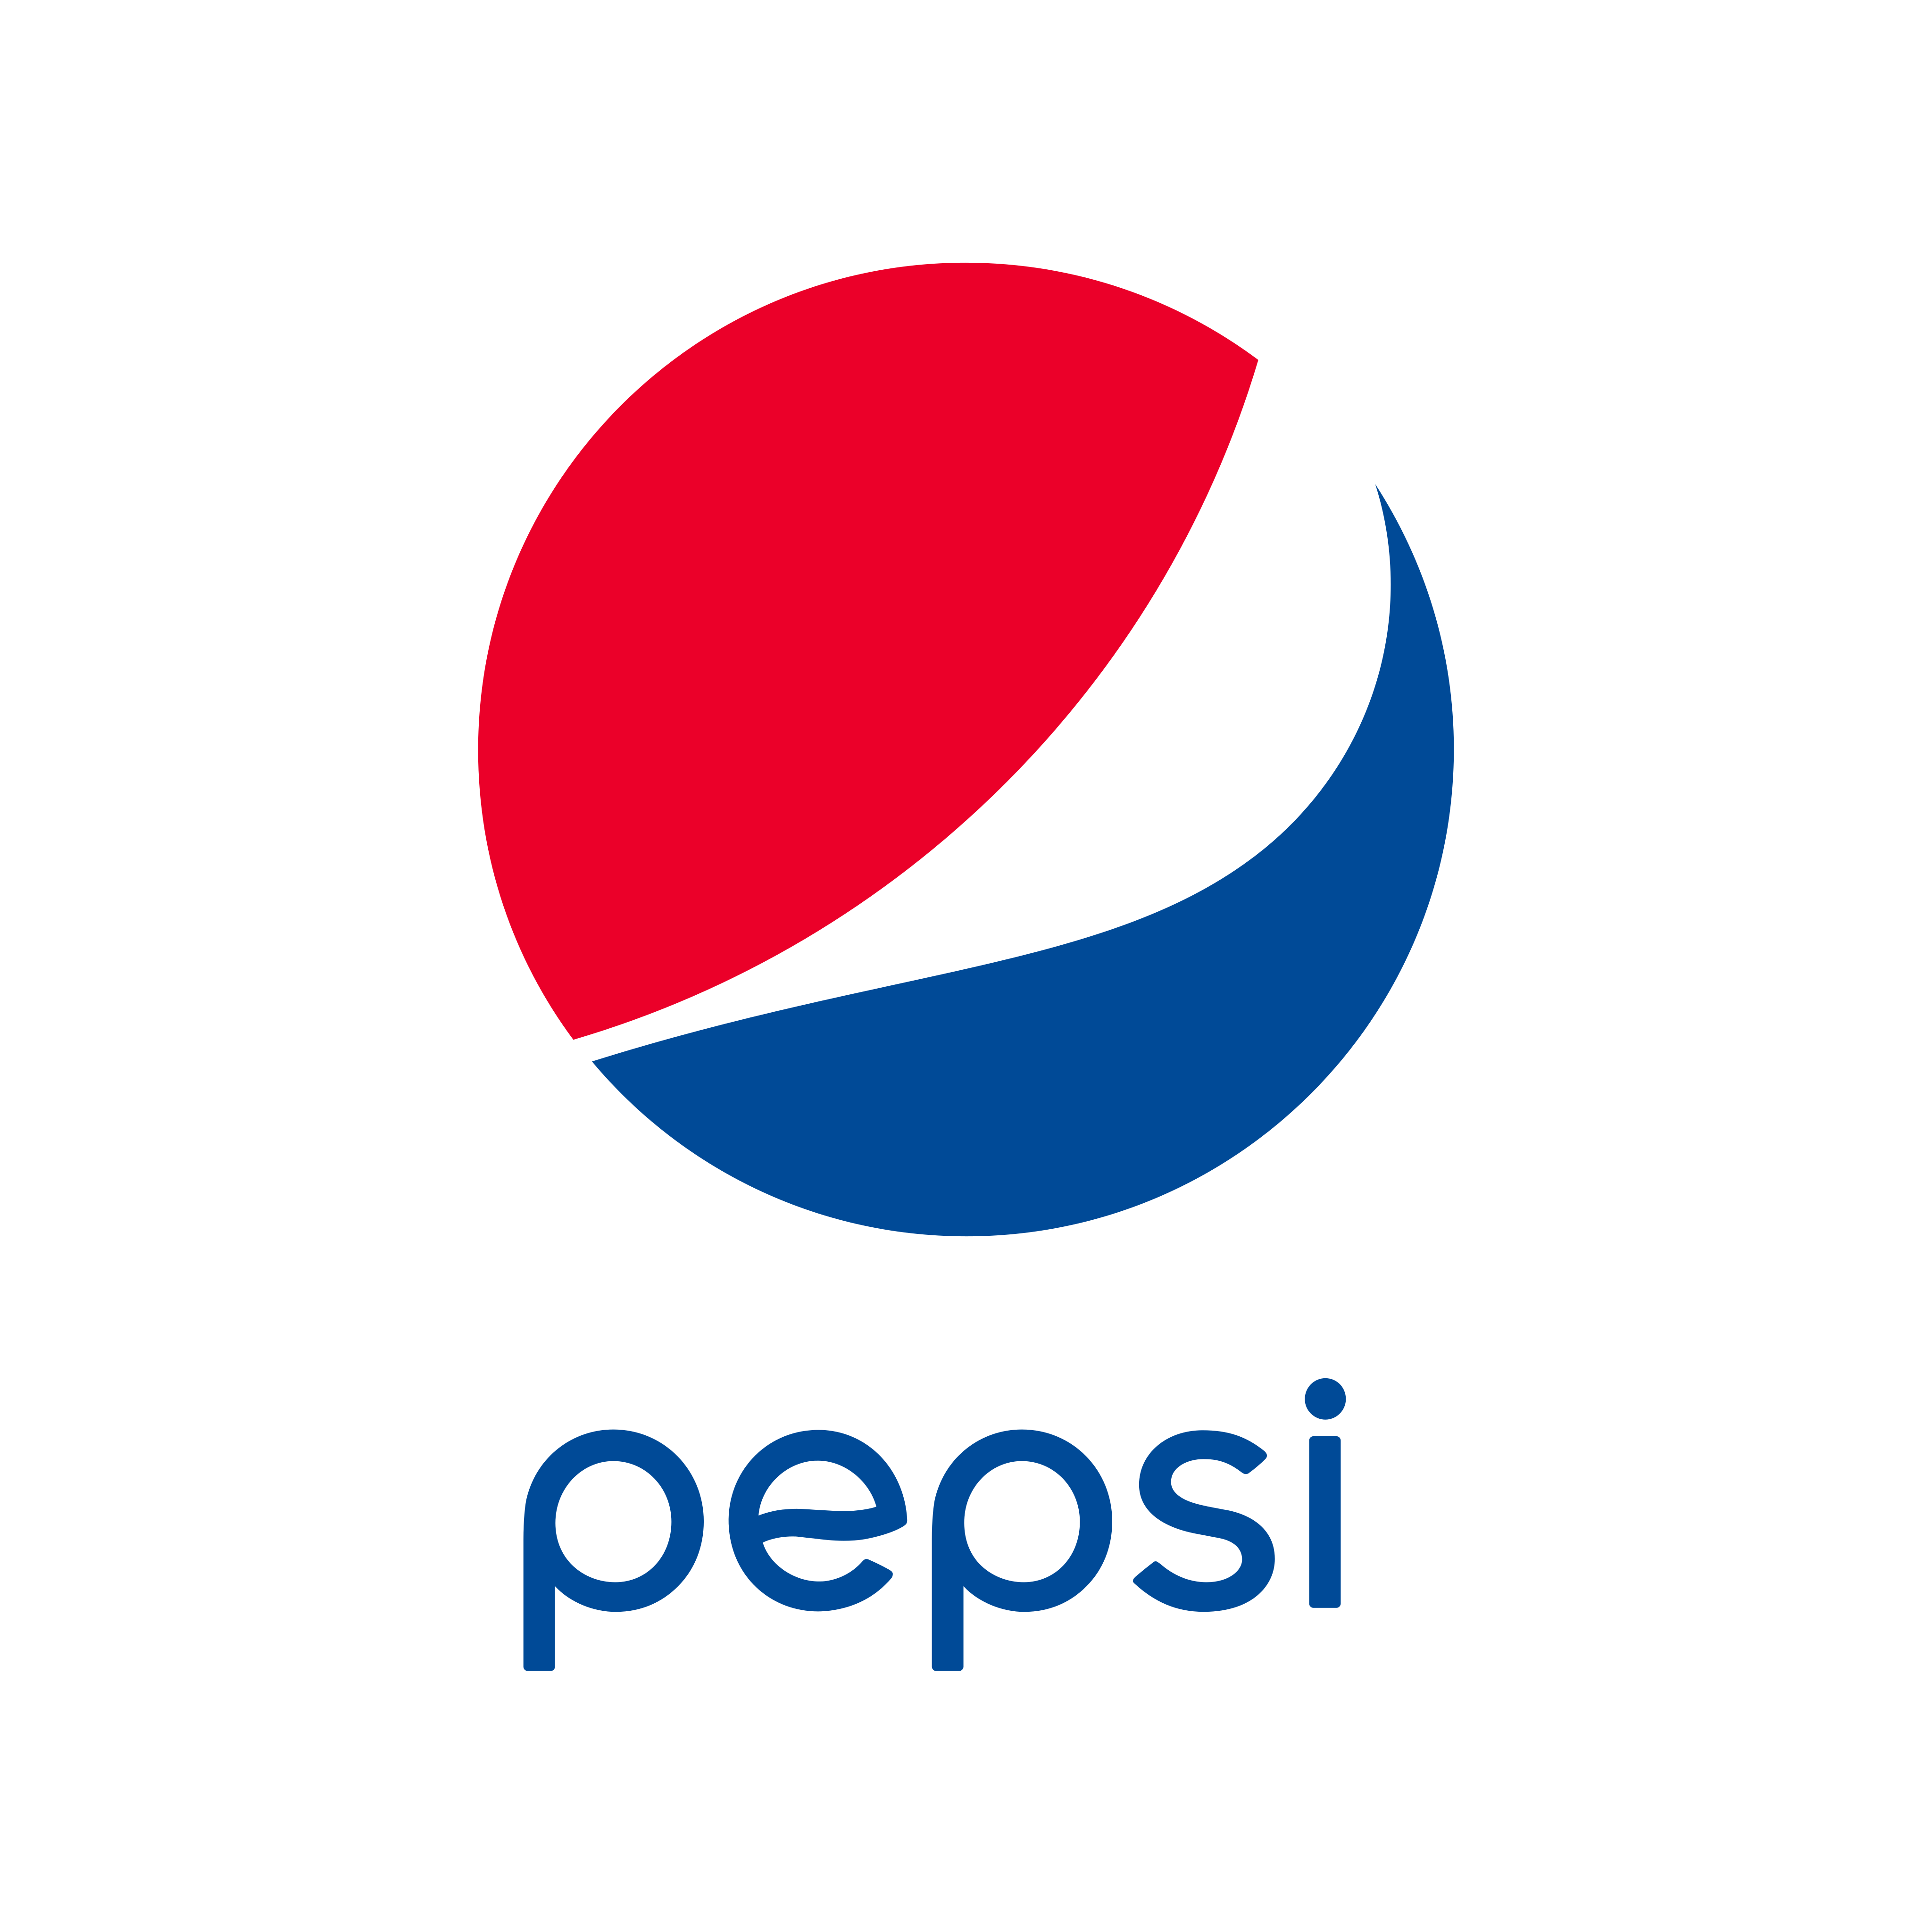 Pepsi Png Logo - KibrisPDR